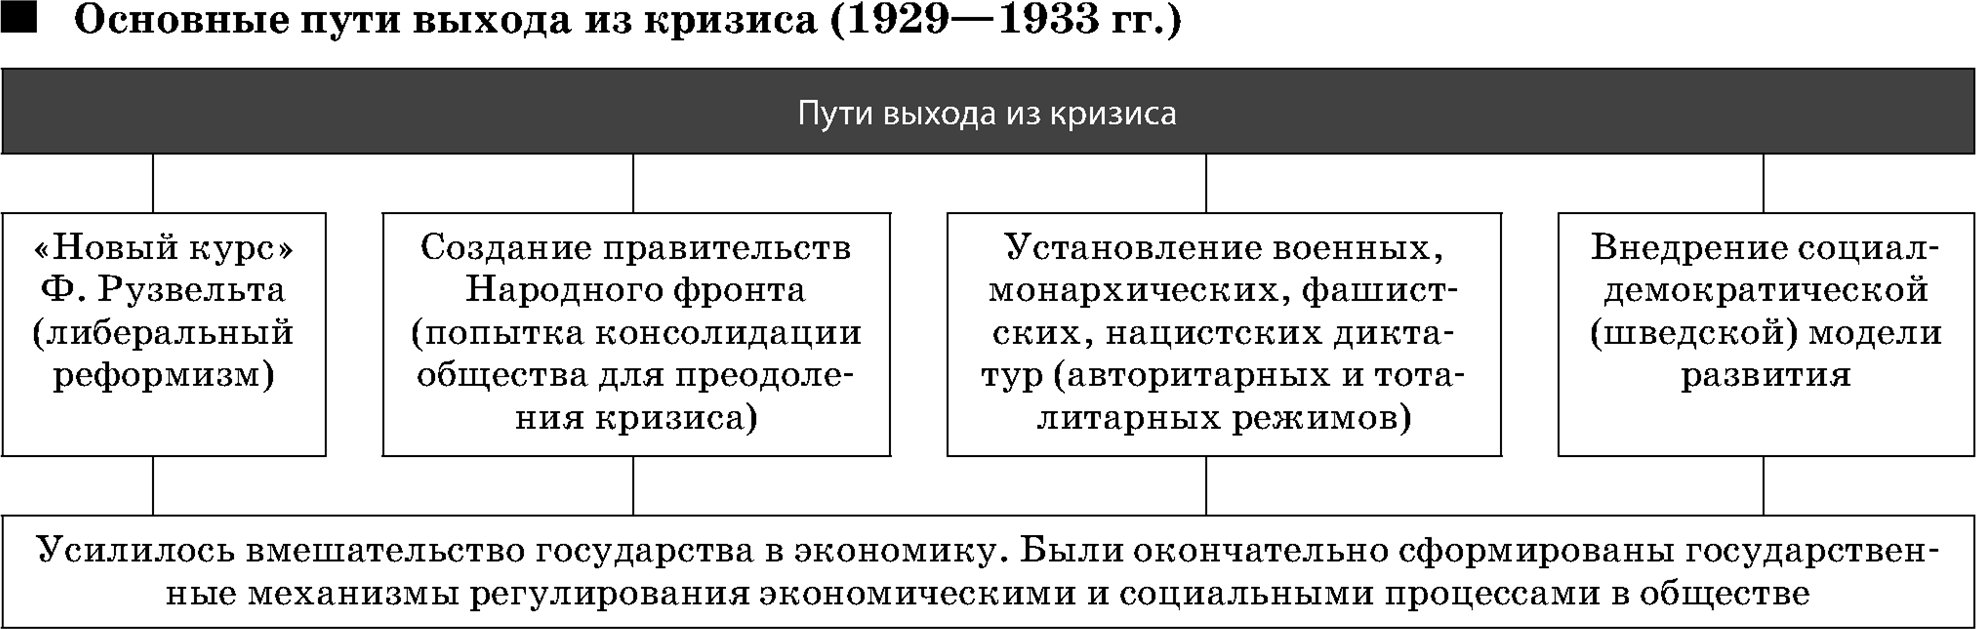 Основные пути выхода из кризиса (1929—1933 гг.)